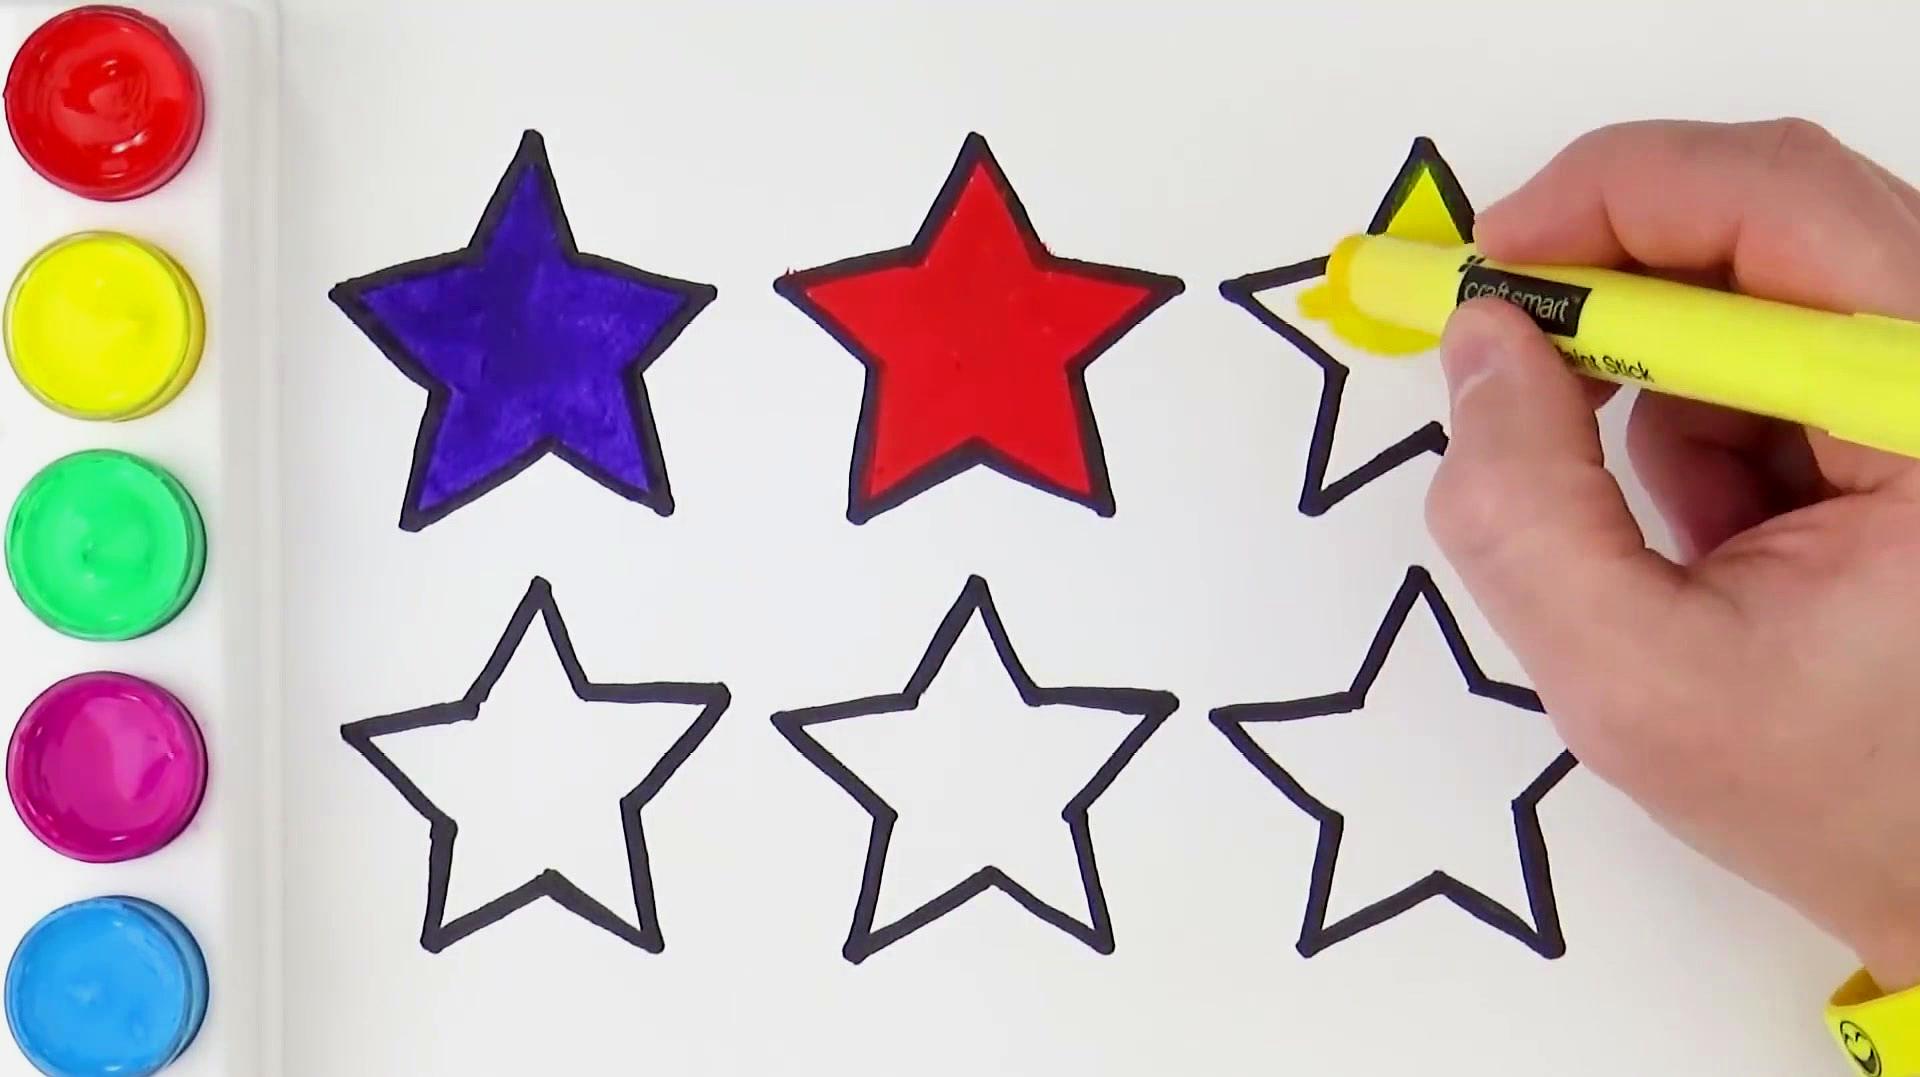 简易画教你怎么画星星跟配色,哇,涂完颜色好漂亮